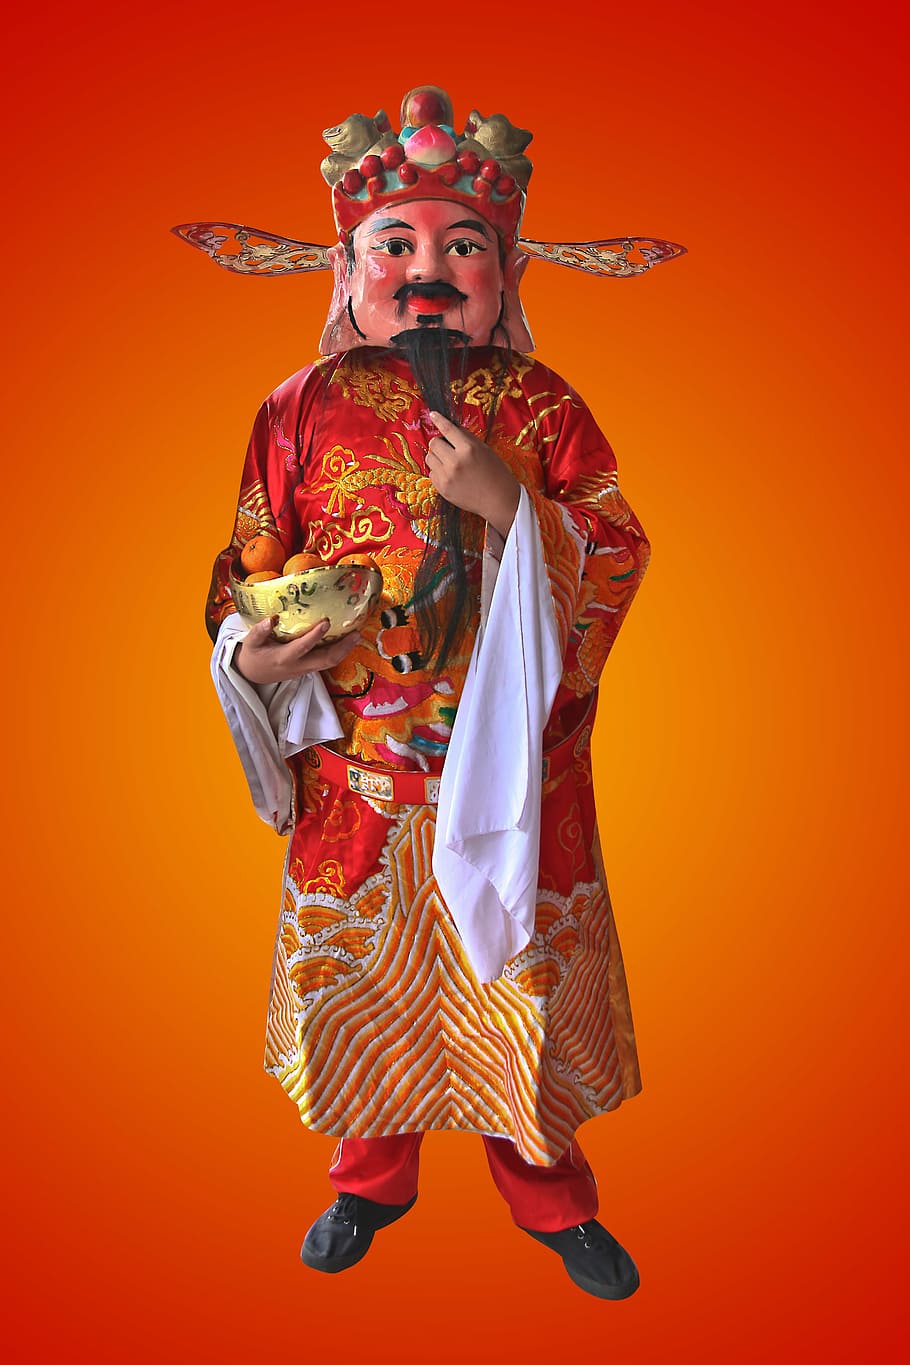 deus da prosperidade, ano novo chinês, ouro, prosperidade, tradicional, riqueza, celebração, festival, bênção, chinês